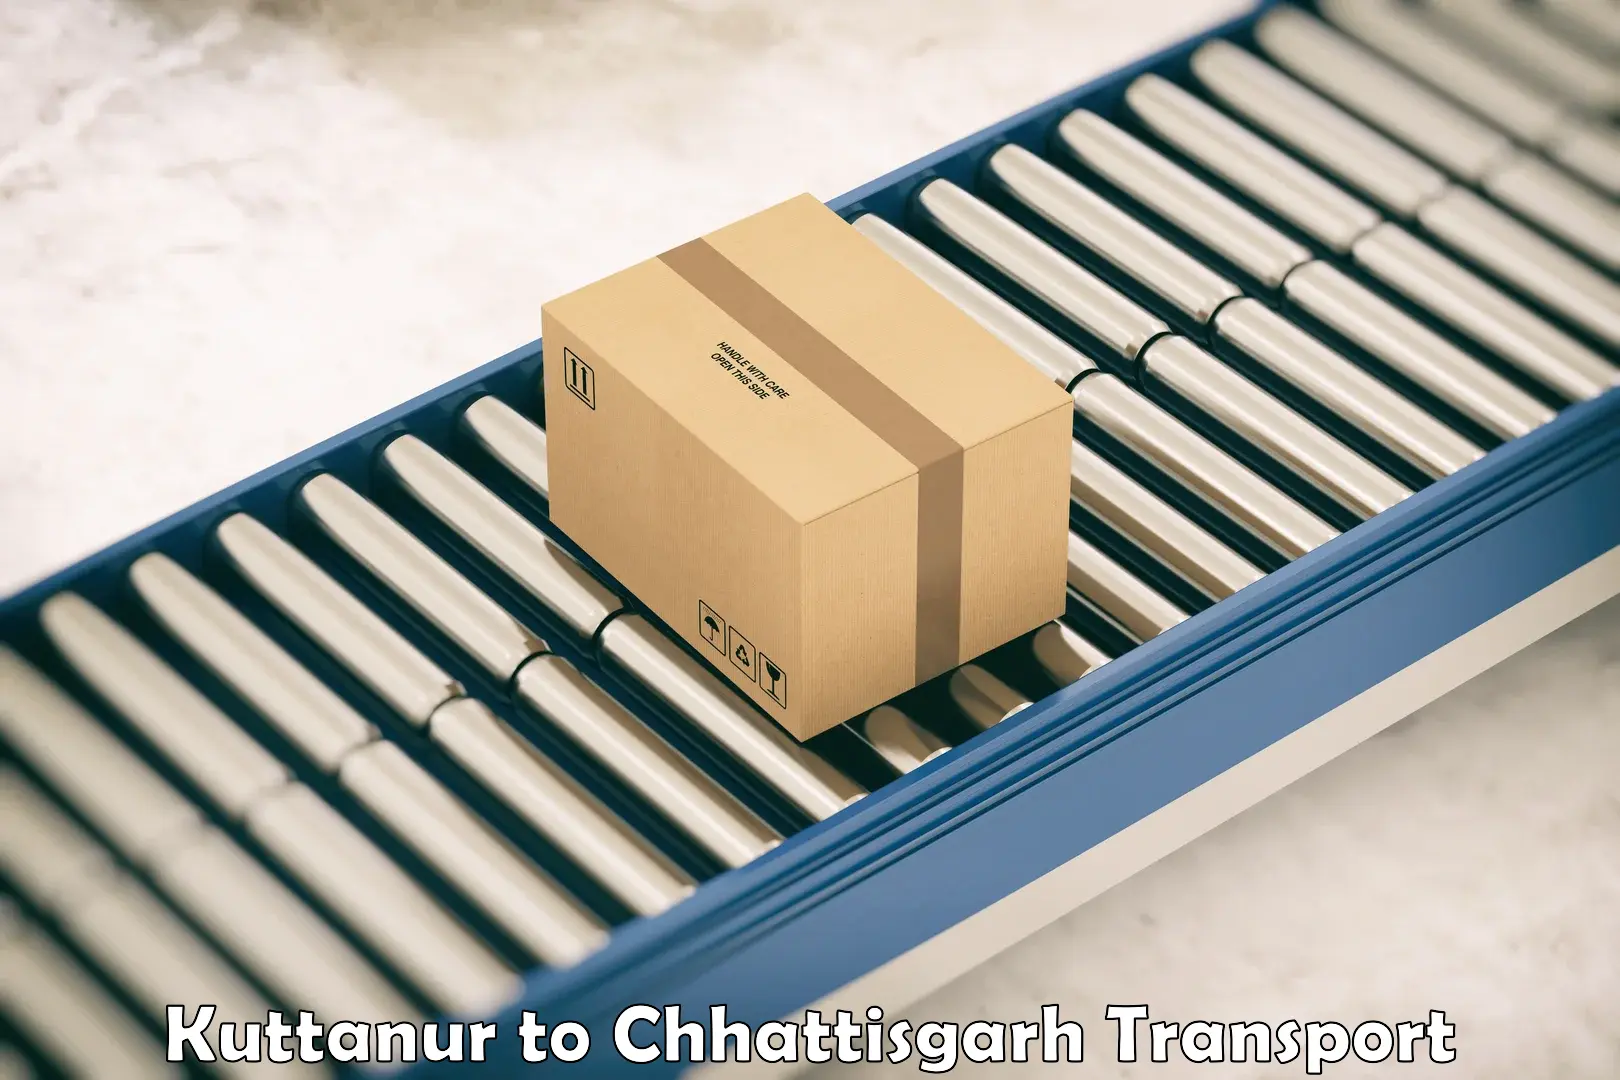 Two wheeler parcel service Kuttanur to Raigarh Chhattisgarh